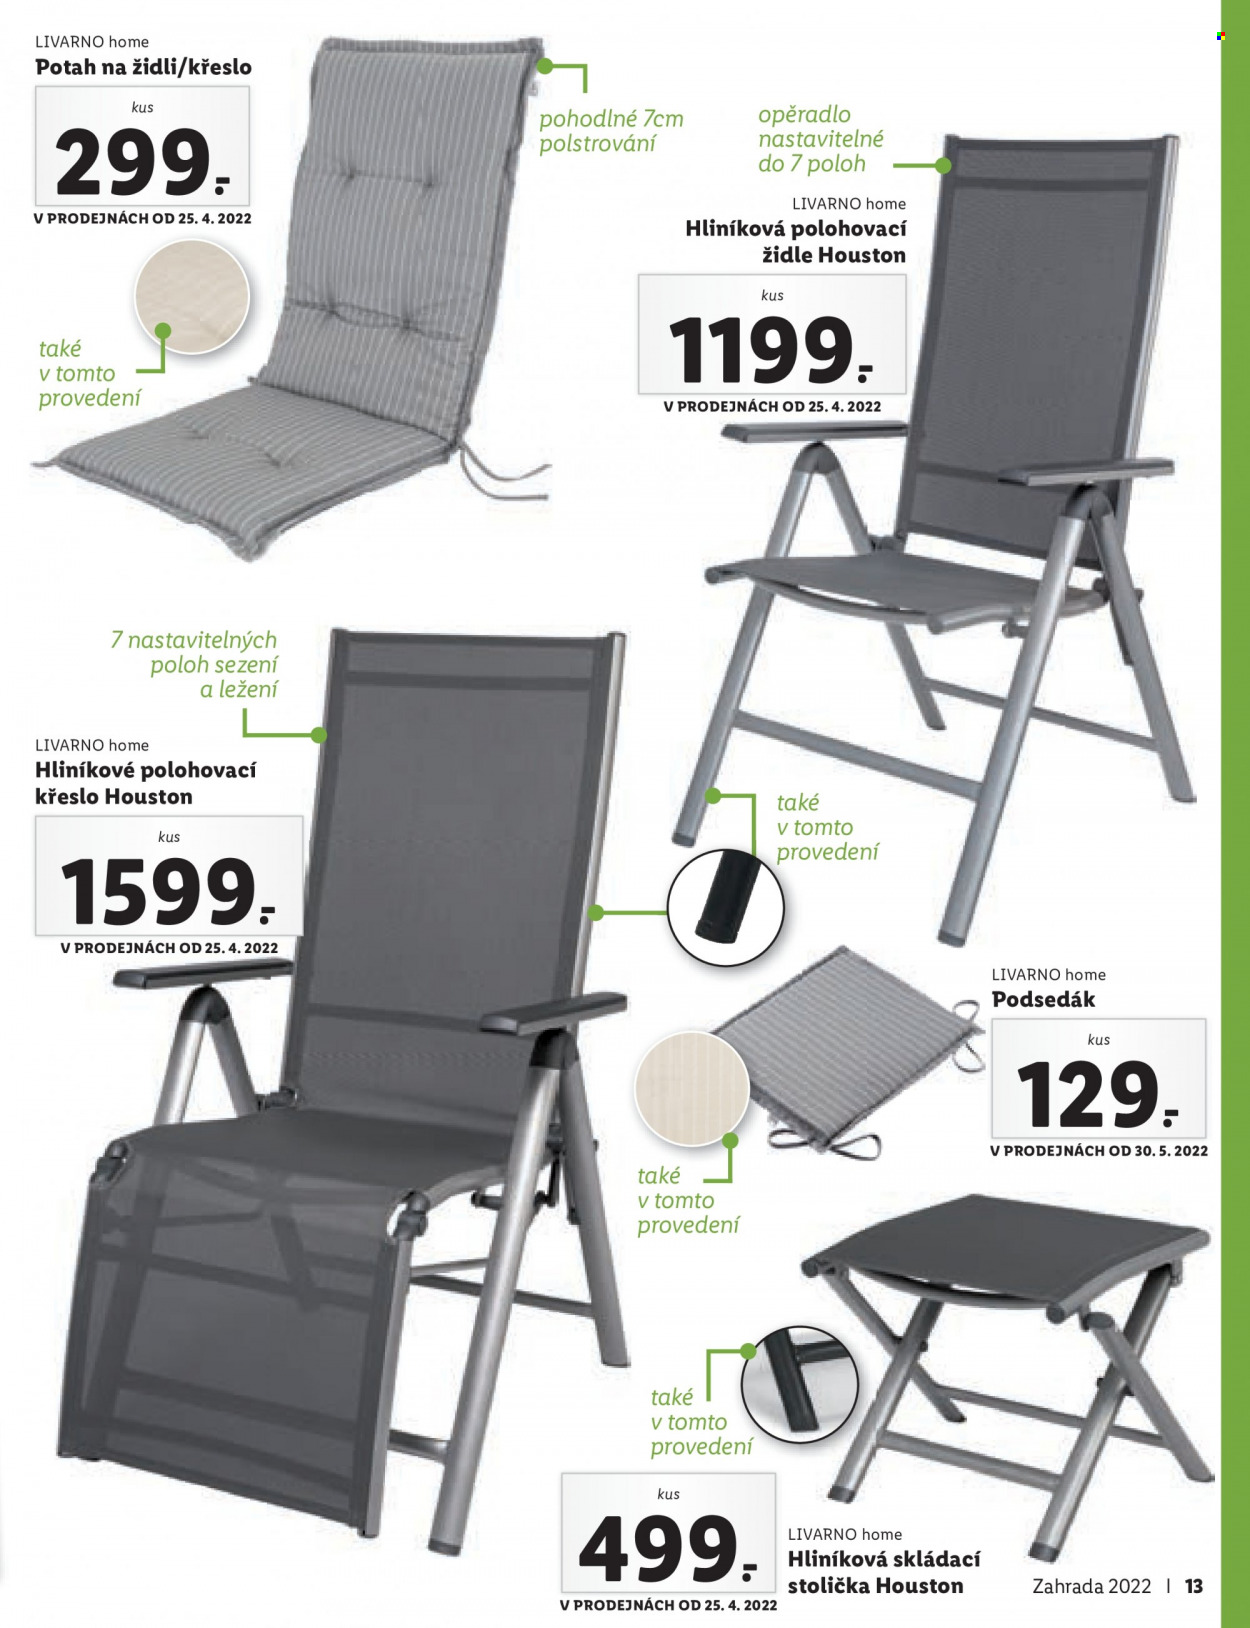 thumbnail - Leták Lidl - 4.4.2022 - 31.5.2022 - Produkty v akci - potah, polohovací křeslo, zahradní židle, židle, křeslo, podsedák, skládací stolička, stolička. Strana 13.